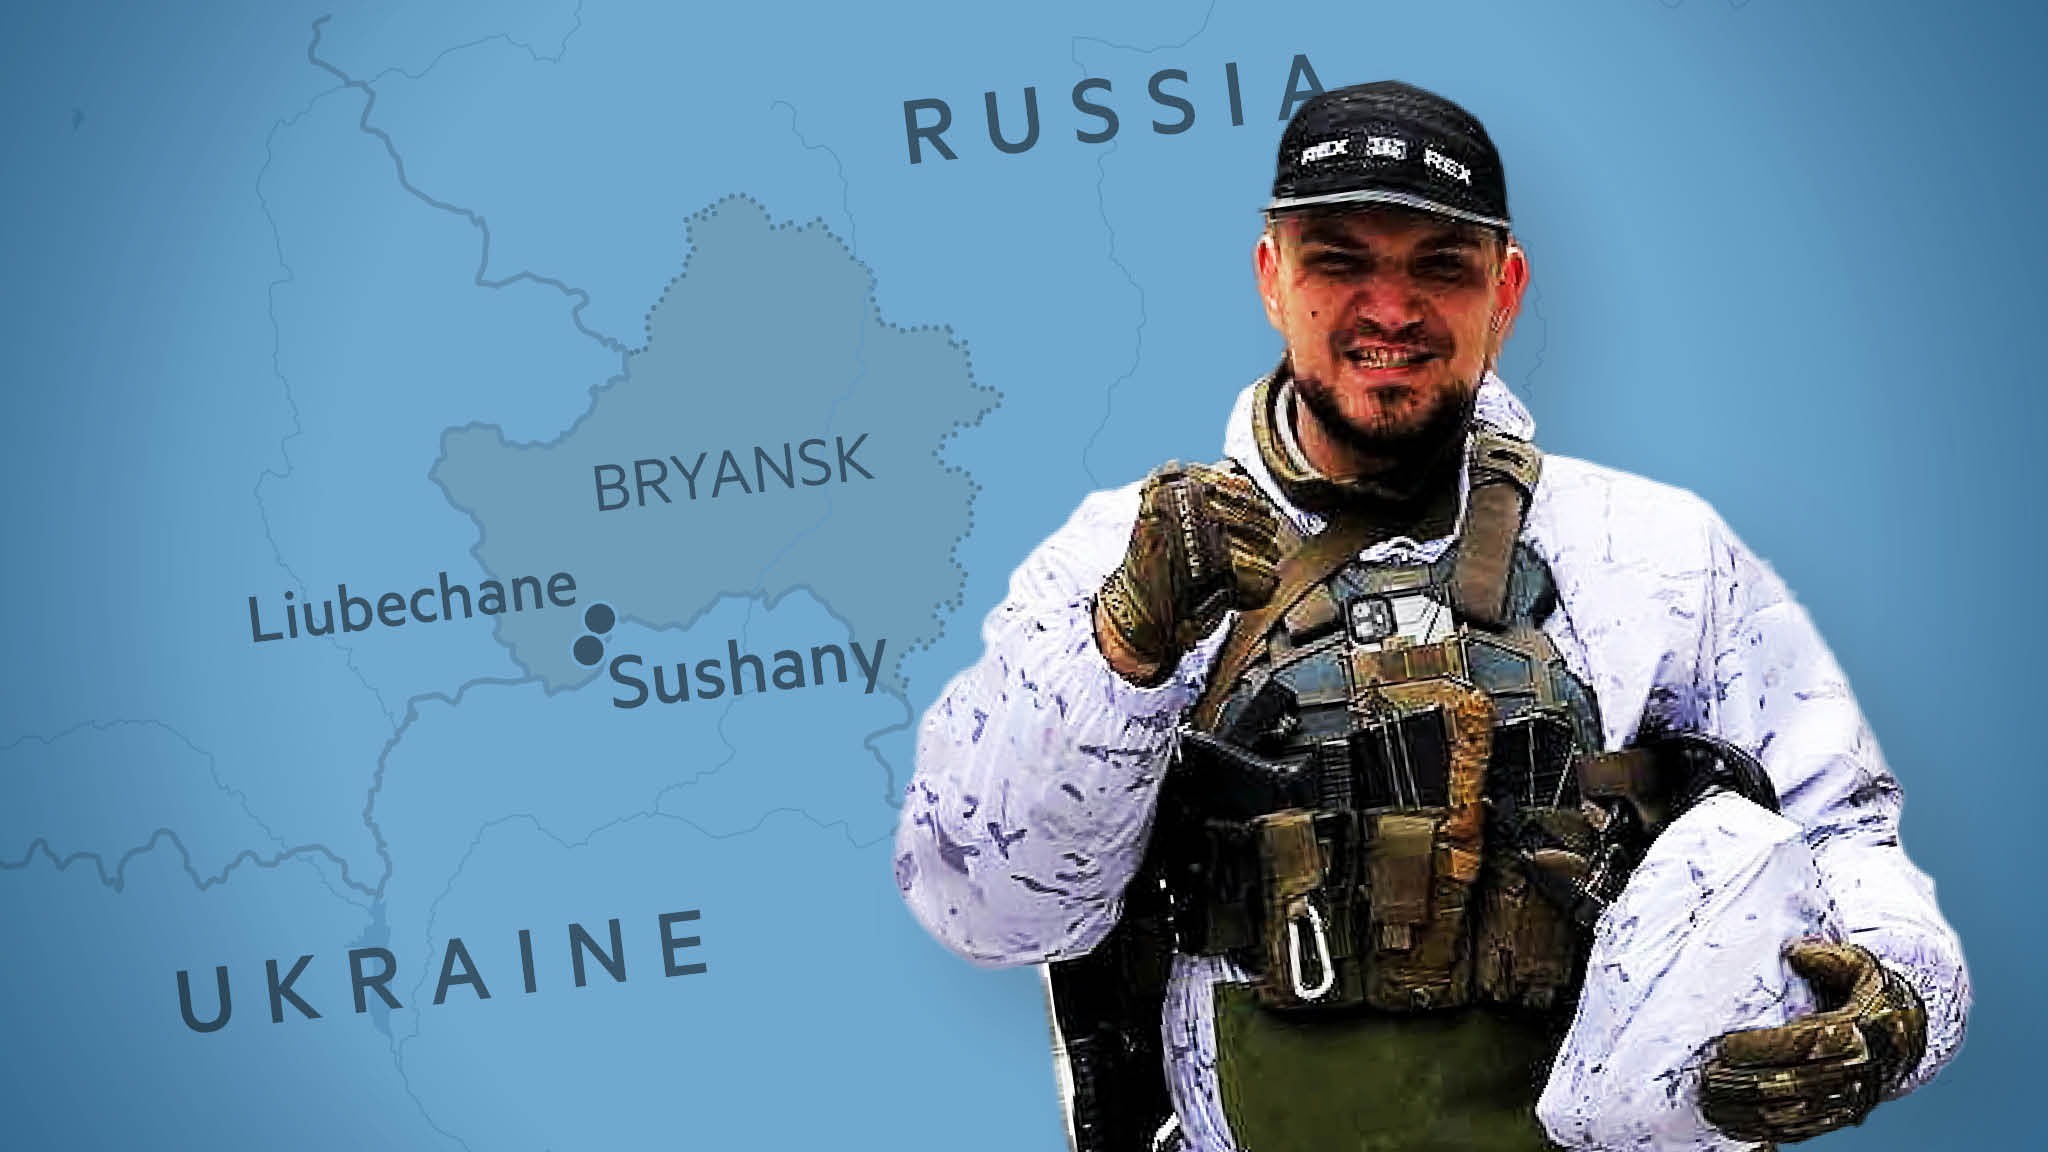 Le milizie anti-Putin promettono altri raid in territorio russo